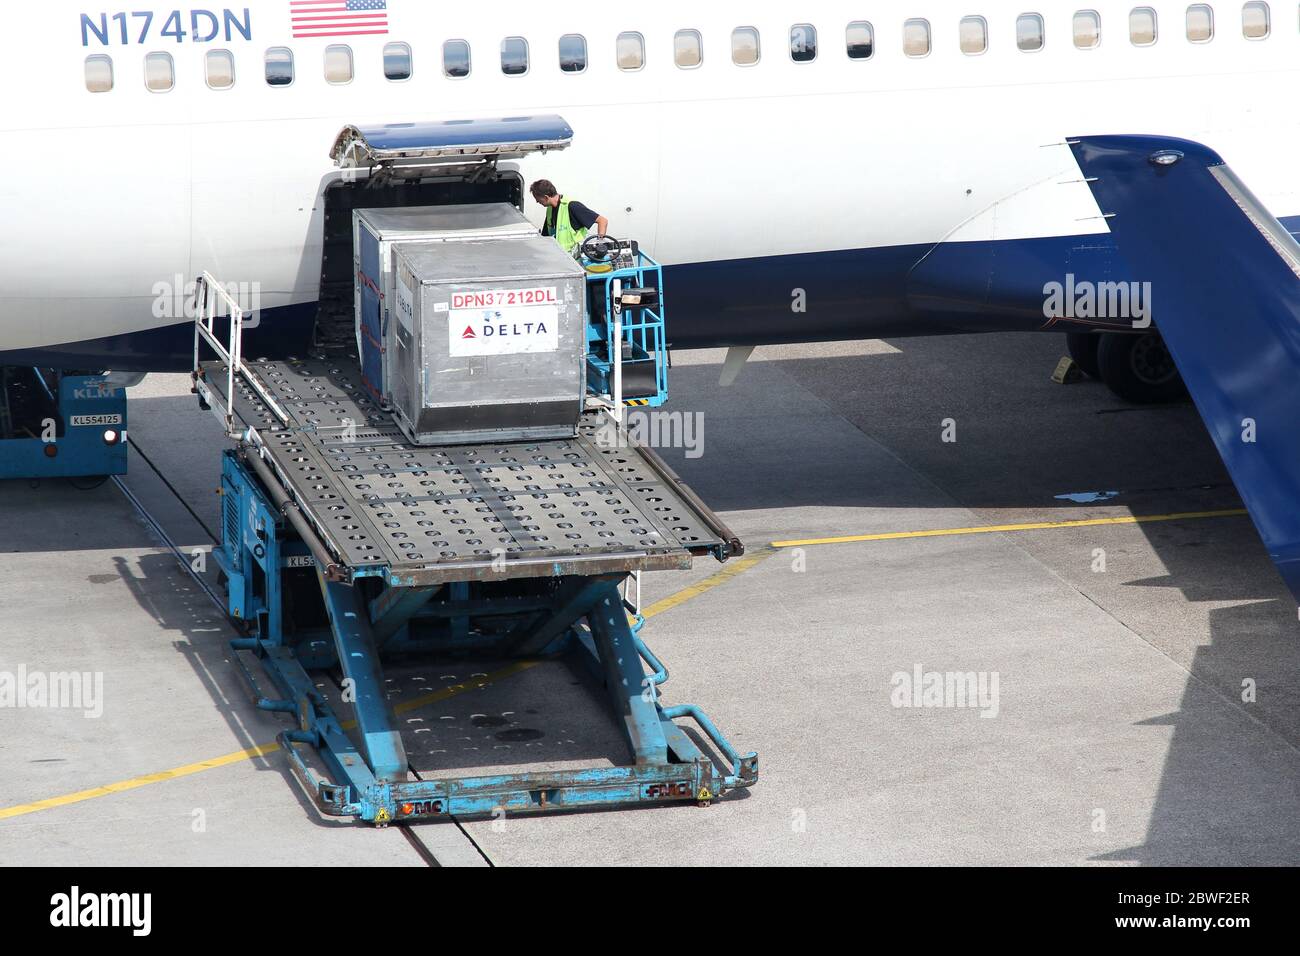 Geräte für die Ladung in die Boeing 767 von Delta Air Lines am Flughafen Amsterdam Schiphol. Stockfoto